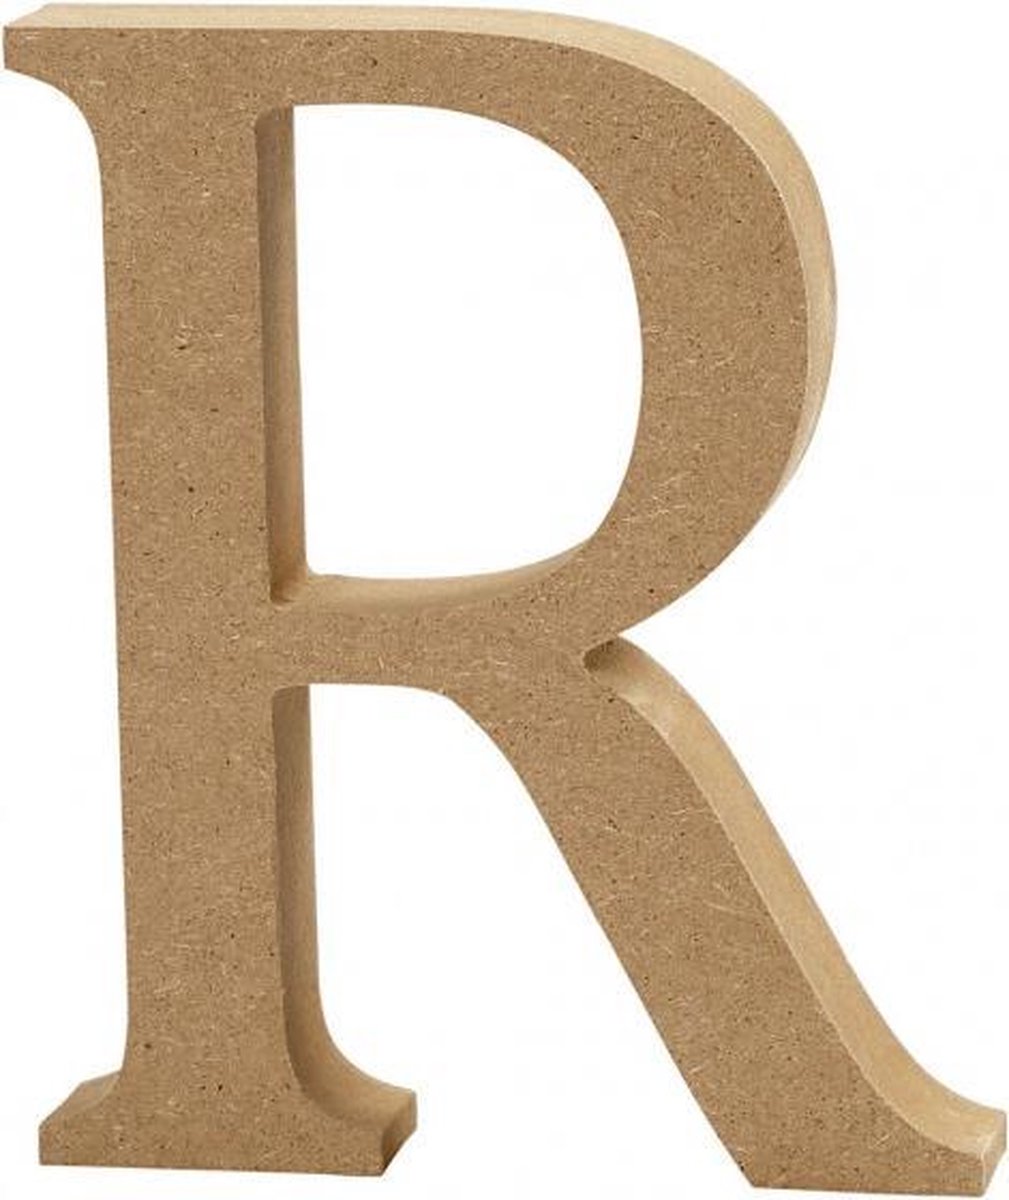 houten letter R 8 cm